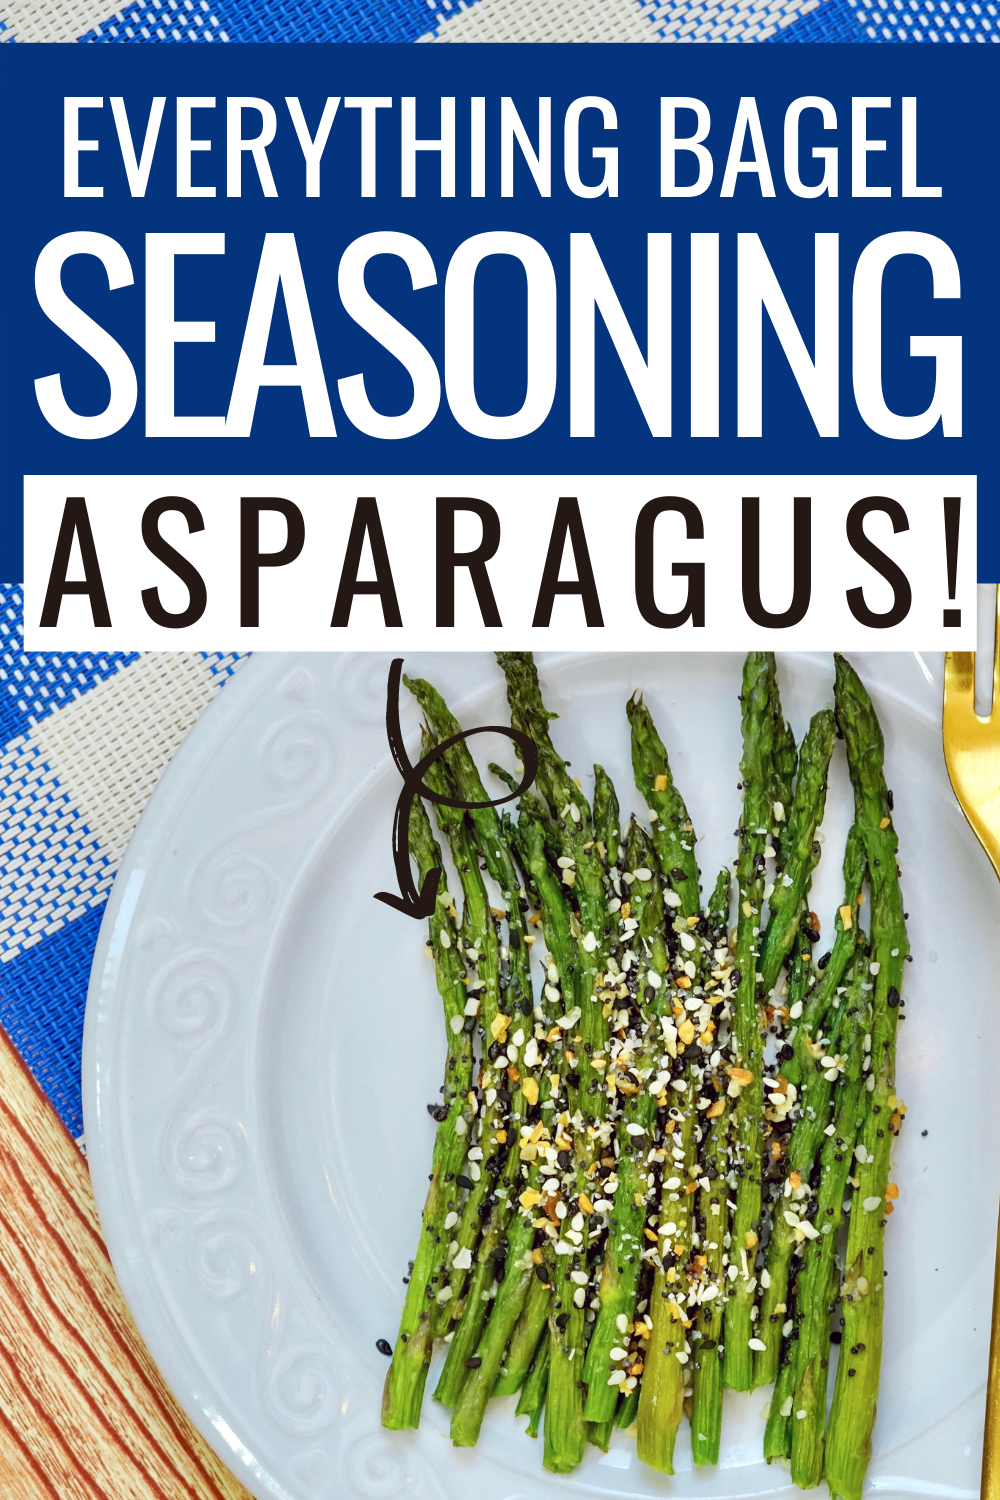 Everything bagel seasoning sheet pan asparagus recipe